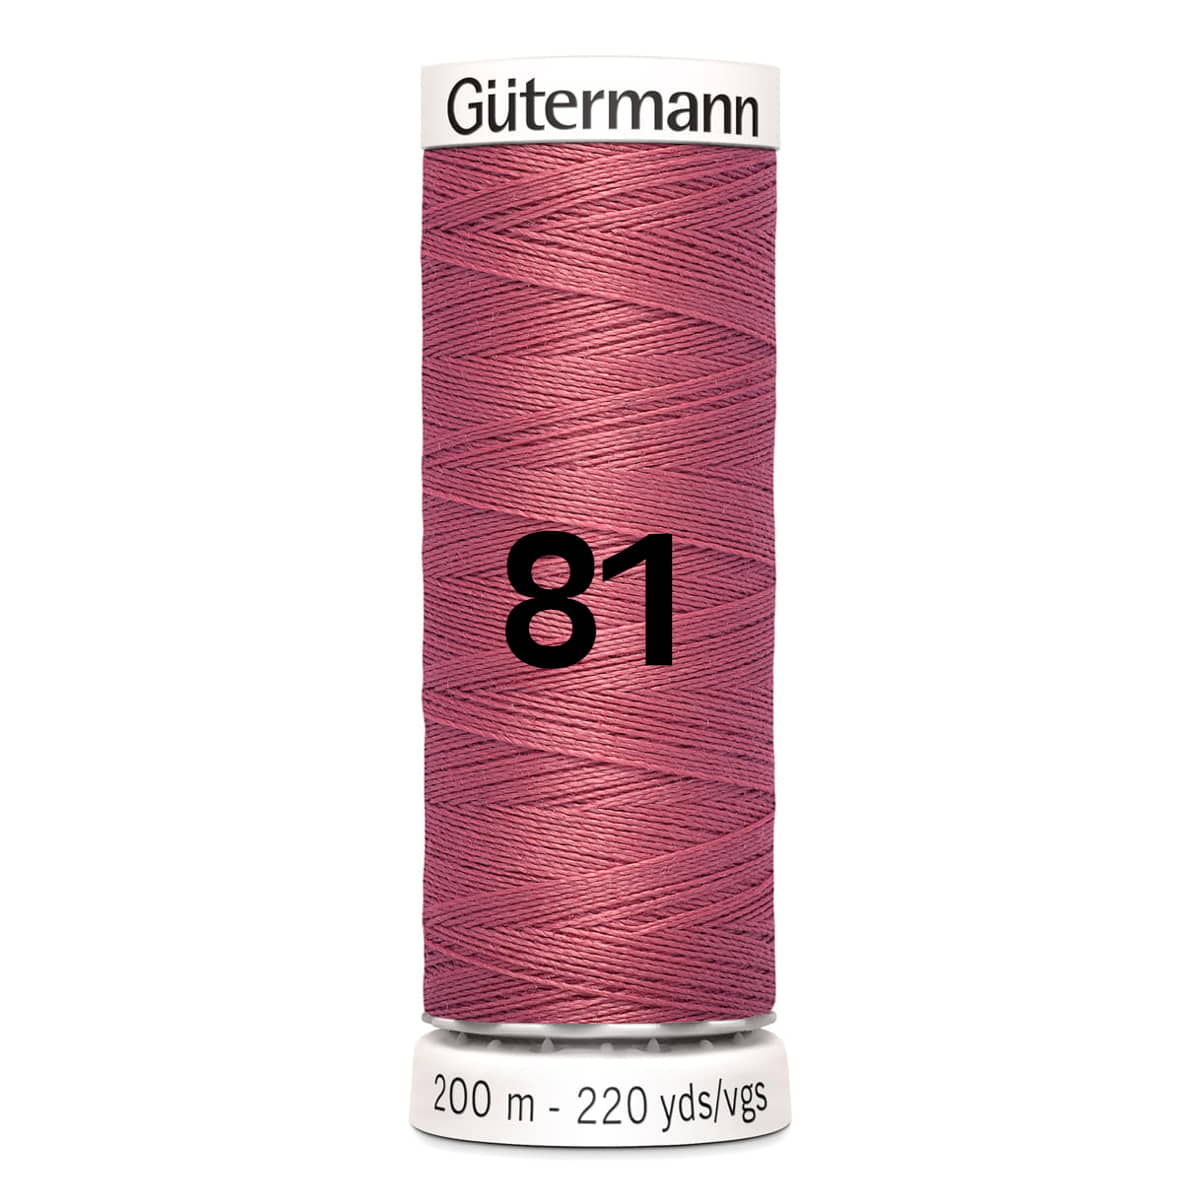 Gutermann garen | 200m | 81 rose rood naaigaren GM-200-81-ROSE-ROOD - Fourniturenkraam.nl